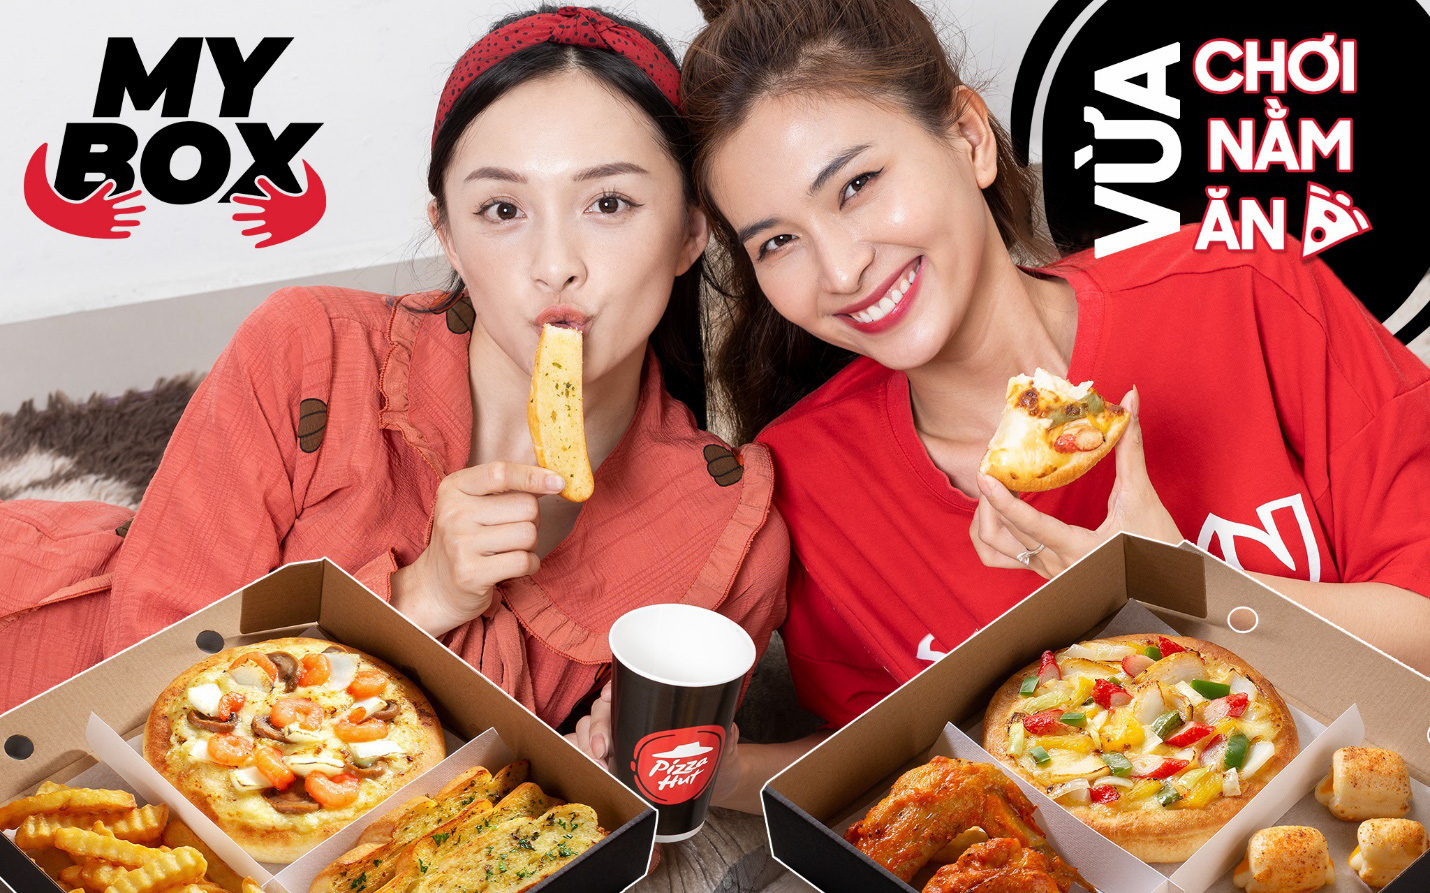 Pizza Hut: Muôn vàn kiểu kết hợp pizza và món ăn kèm chỉ từ 99.000 đồng!